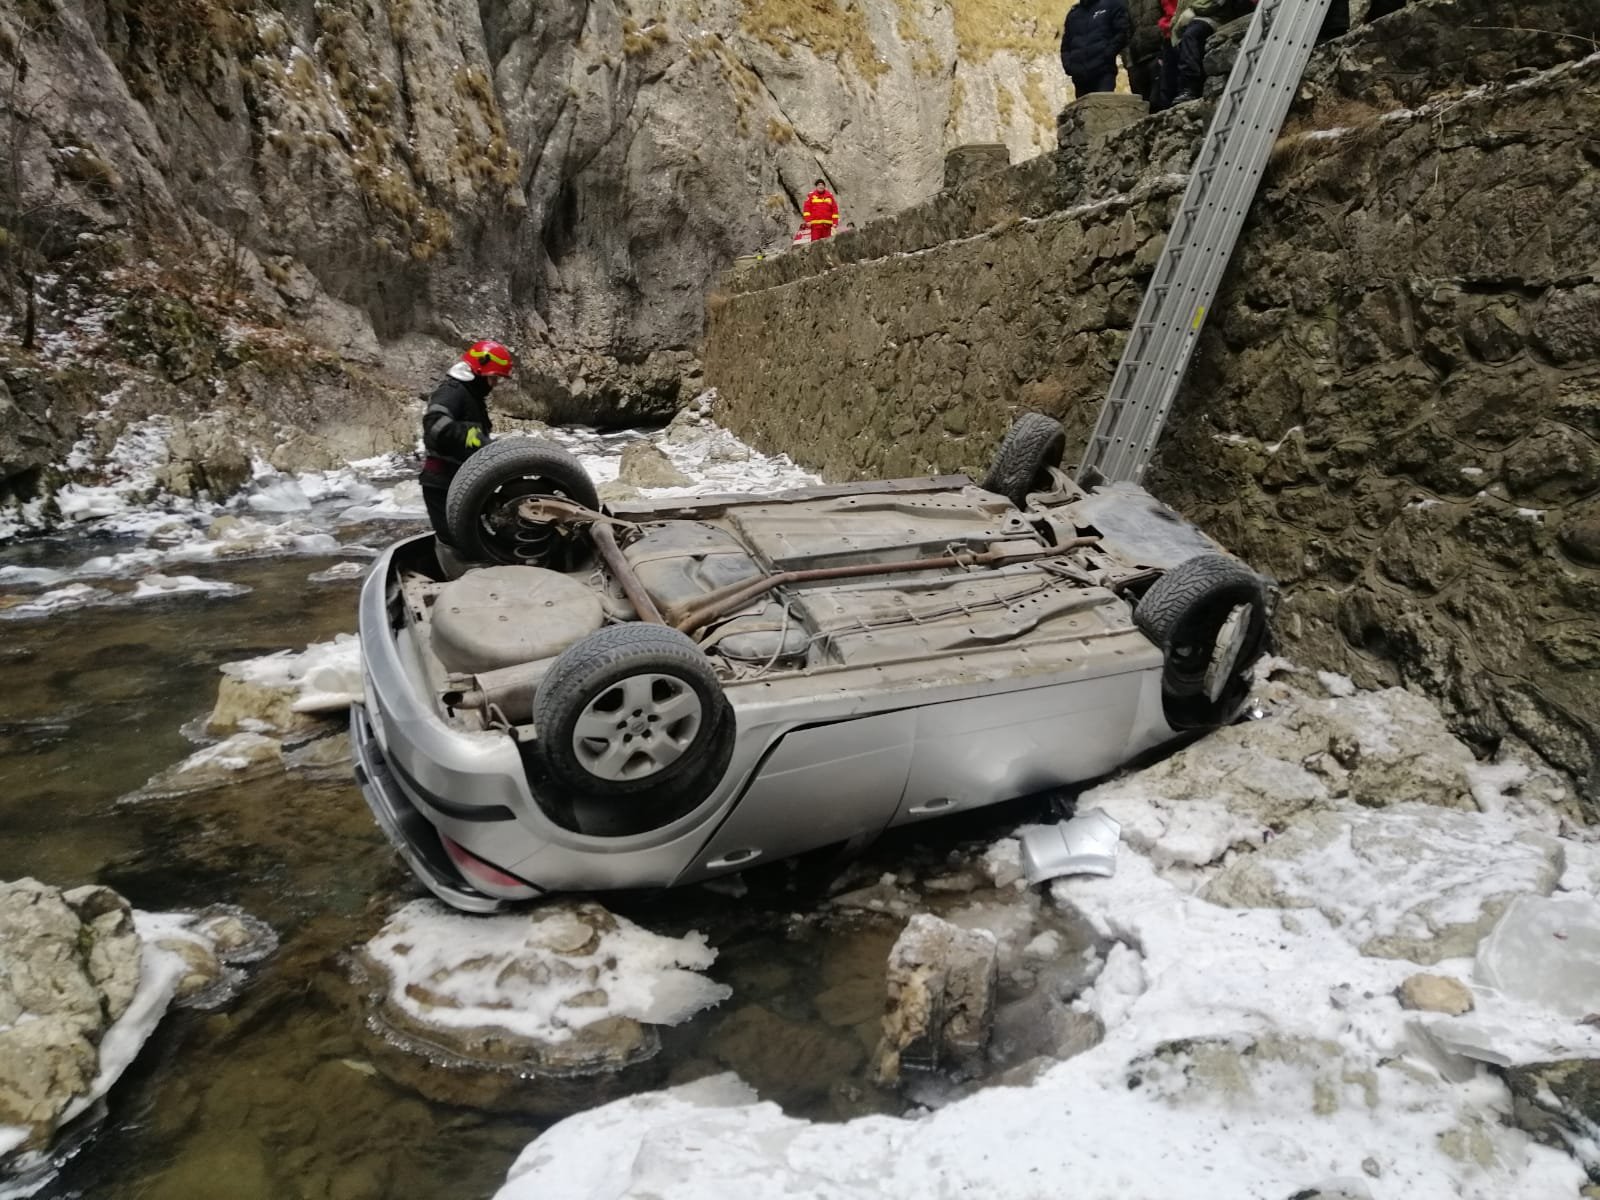  Autoturism răsturnat în albia râului Bicaz. Trei persoane scoase de voluntari